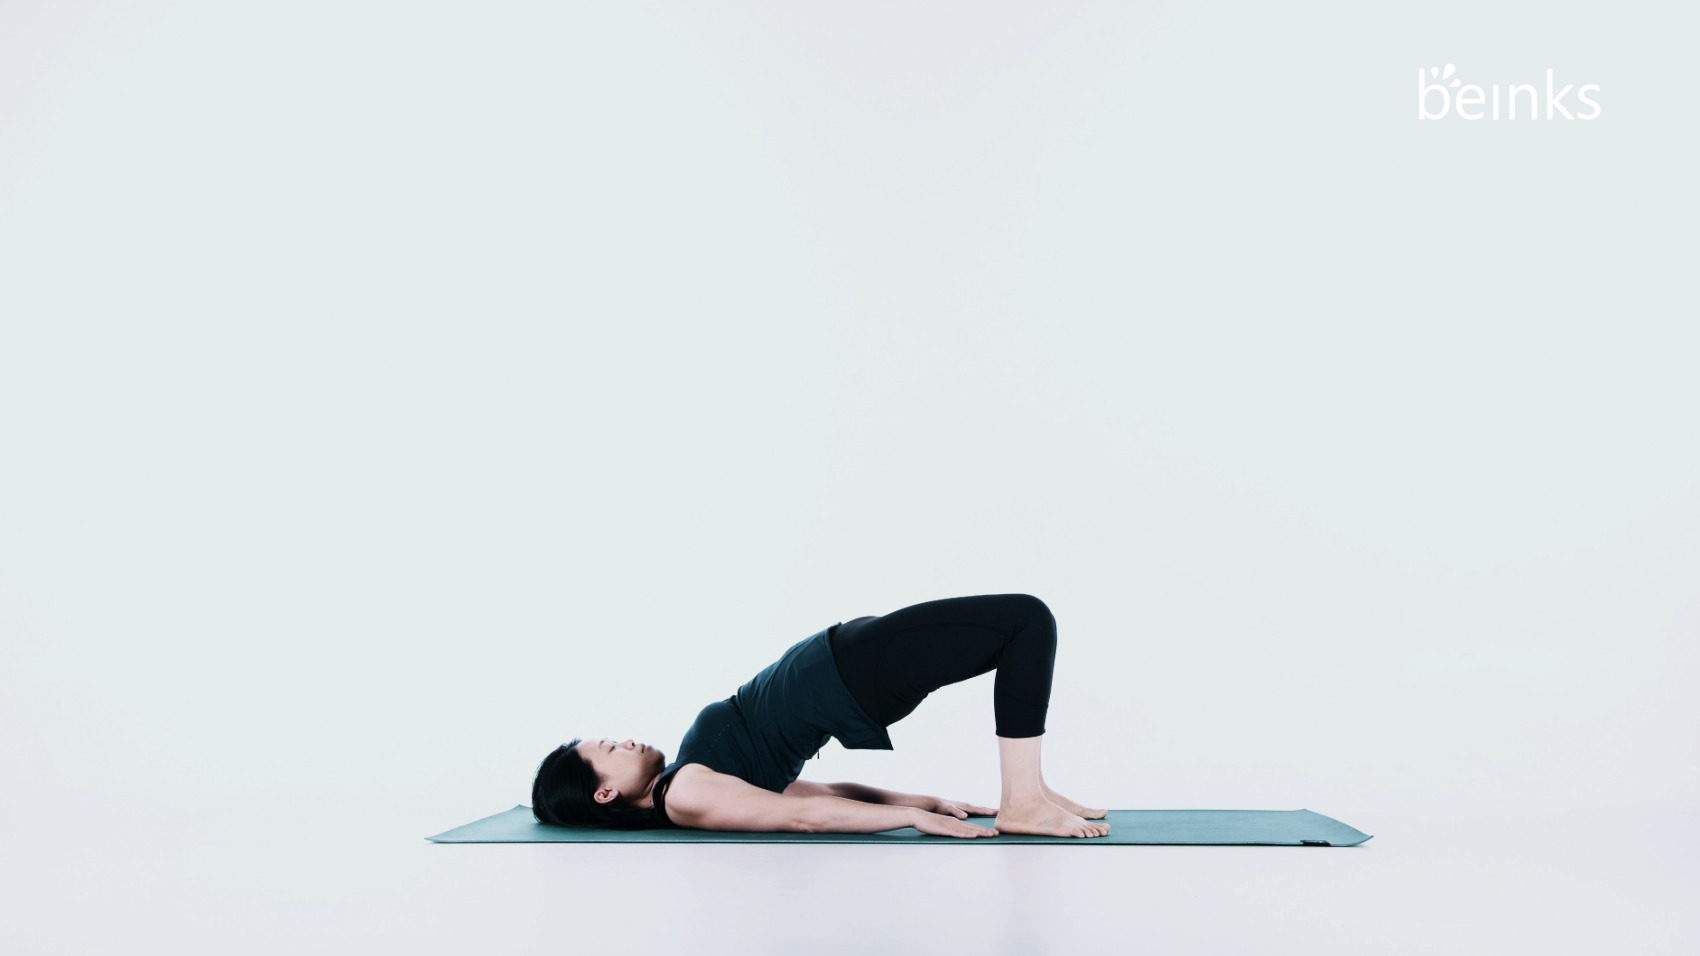 Upper Back Stretches for Bridge Pose | Bridge pose, Upper back stretches,  Yoga stretches